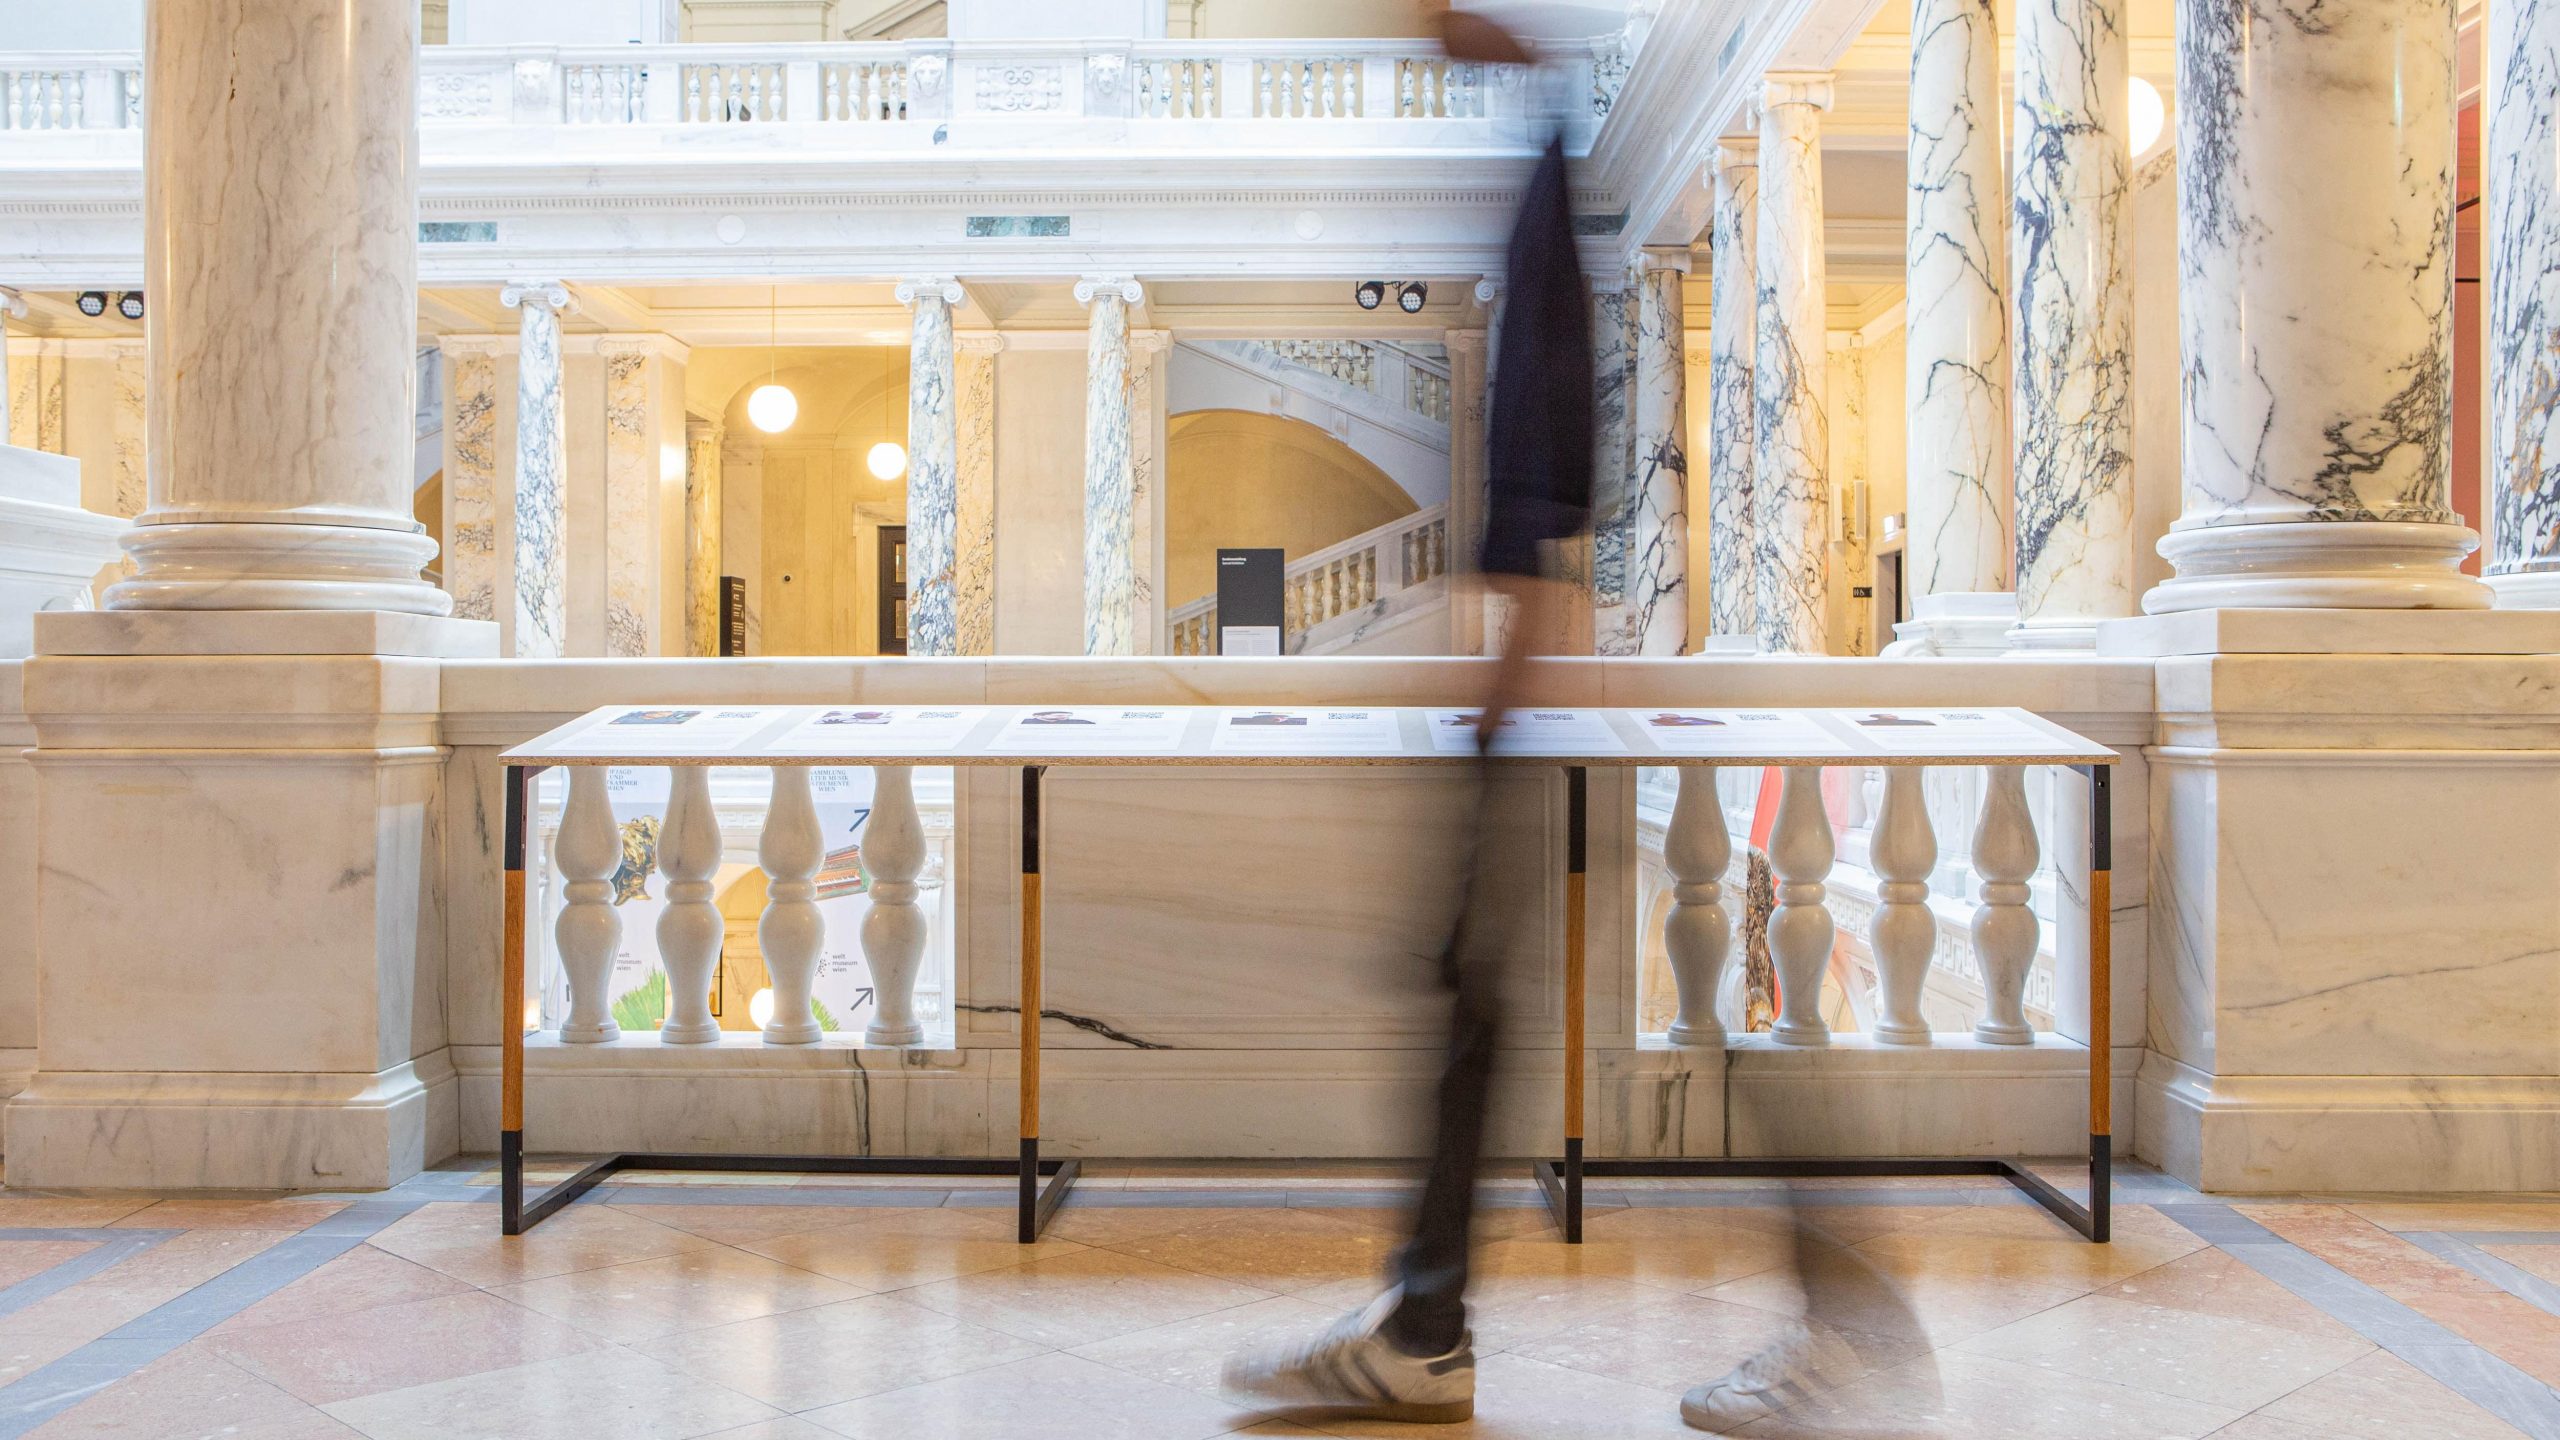 Auf dem Bild ist das Weltmuseum Wien zu sehen. Ein Mensch läuft an einem Ausstellungstisch vorbei.